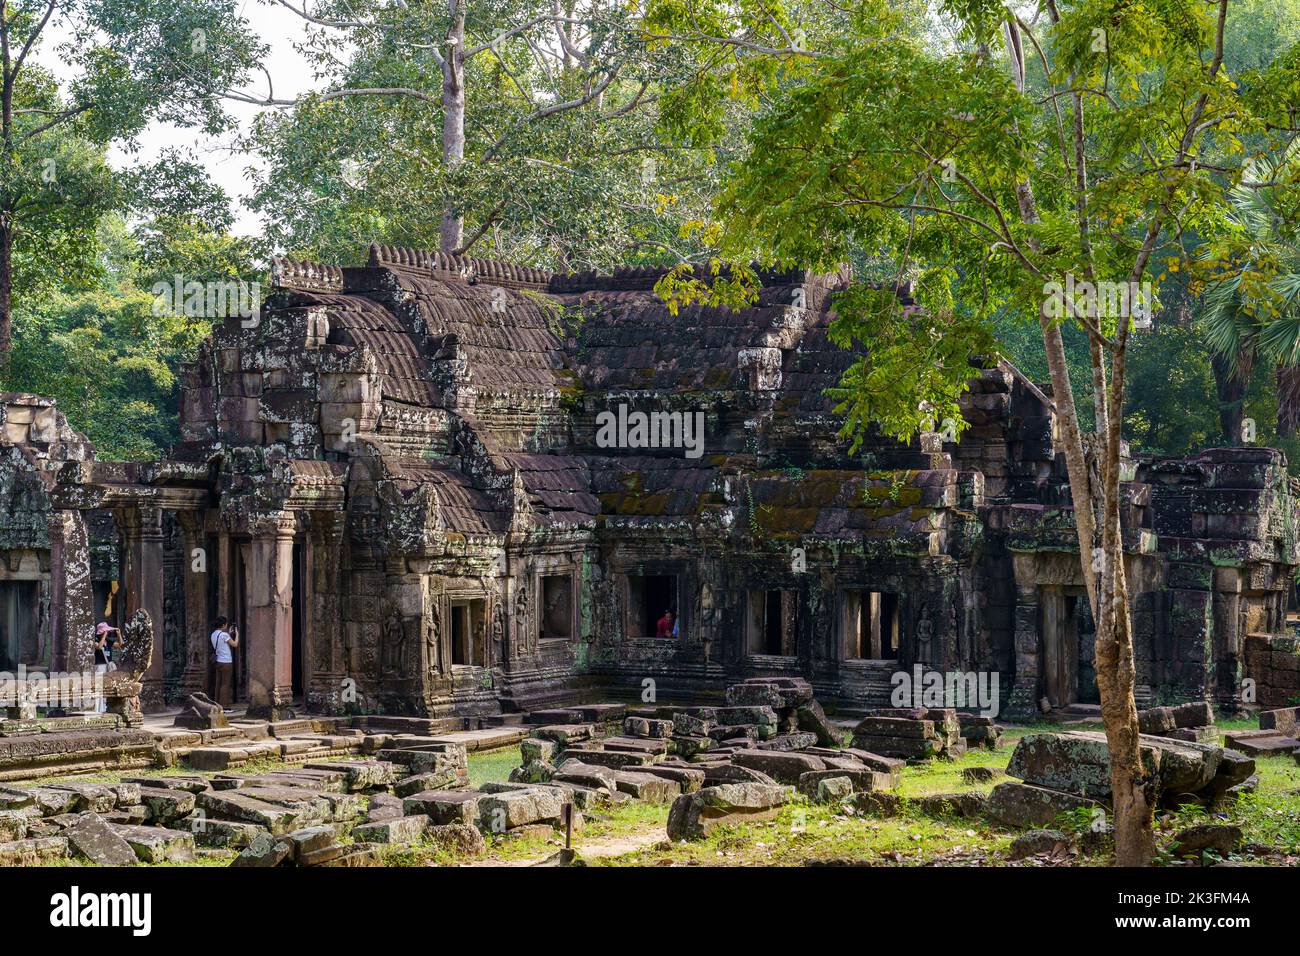 Camboya. Provincia de Siem Reap. El parque arqueológico de Angkor. Las antiguas ruinas del templo Banteay Kdei Foto de stock